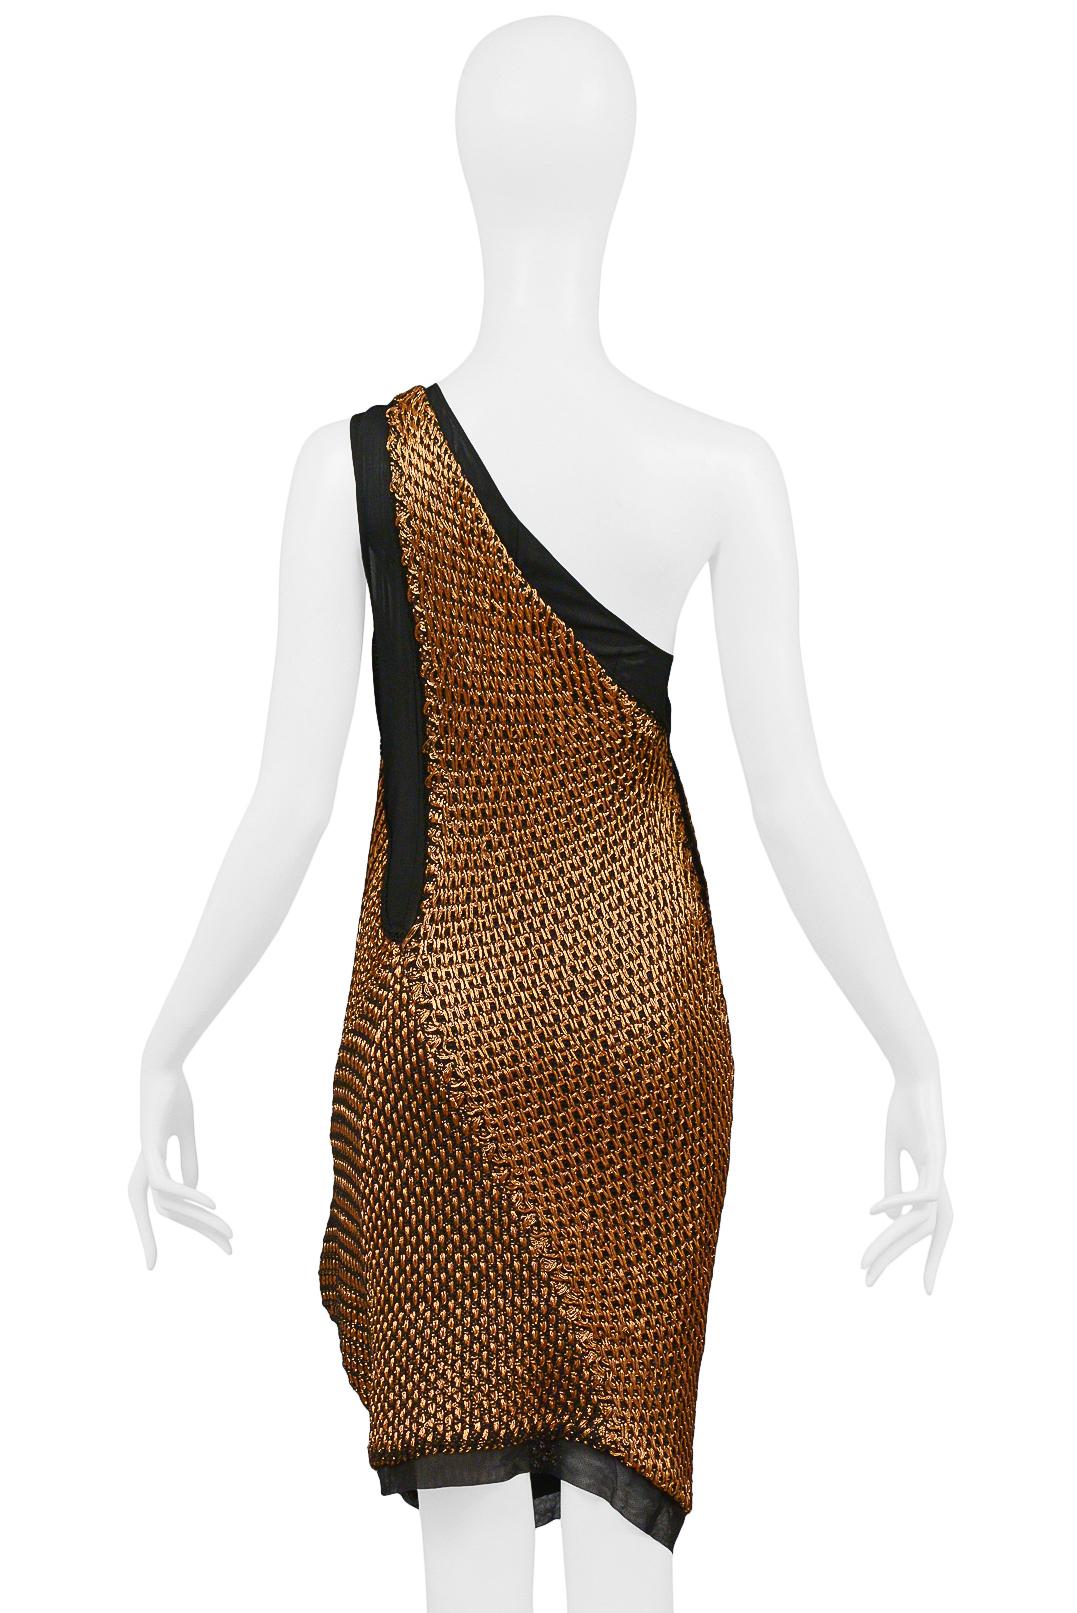 Women's Balenciaga By Nicolas Ghesquiere Copper Wire Crochet Dress 2007 For Sale